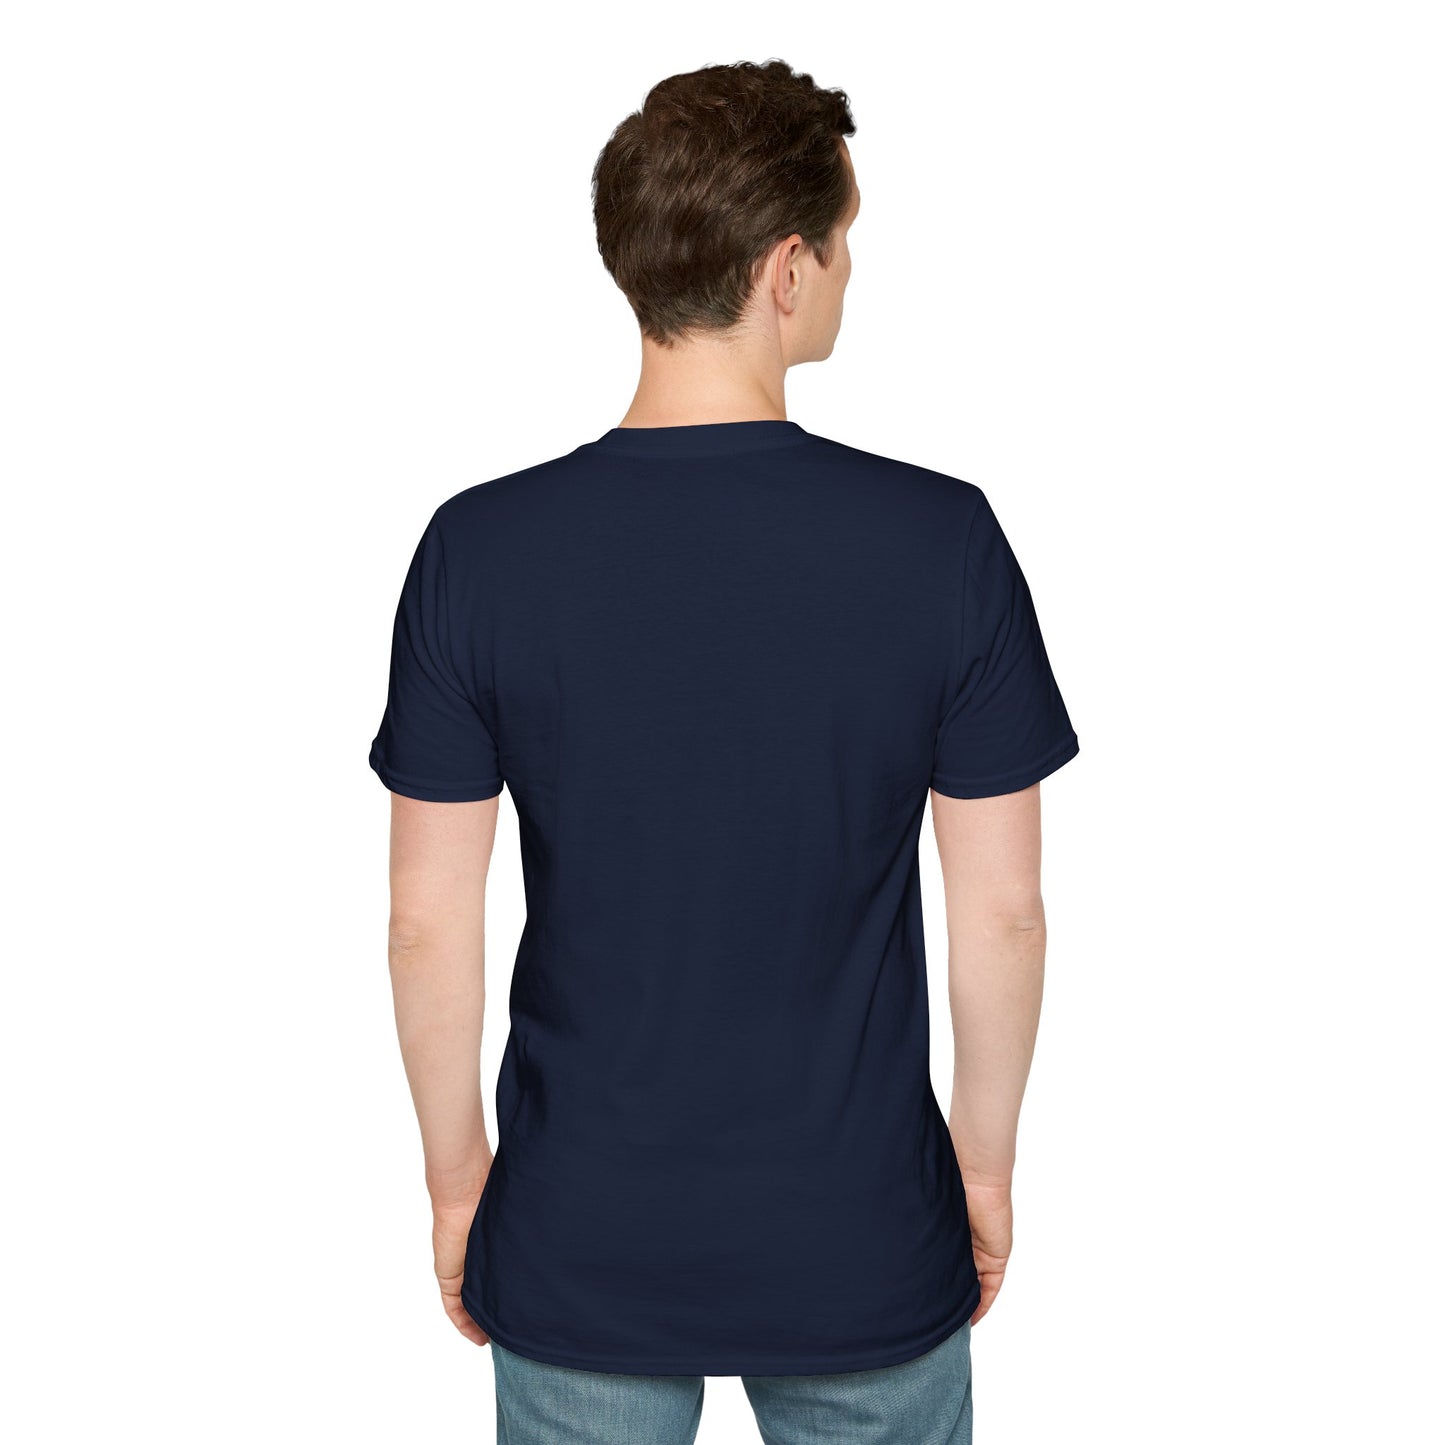 TG-3 Unisex Softstyle T-Shirt